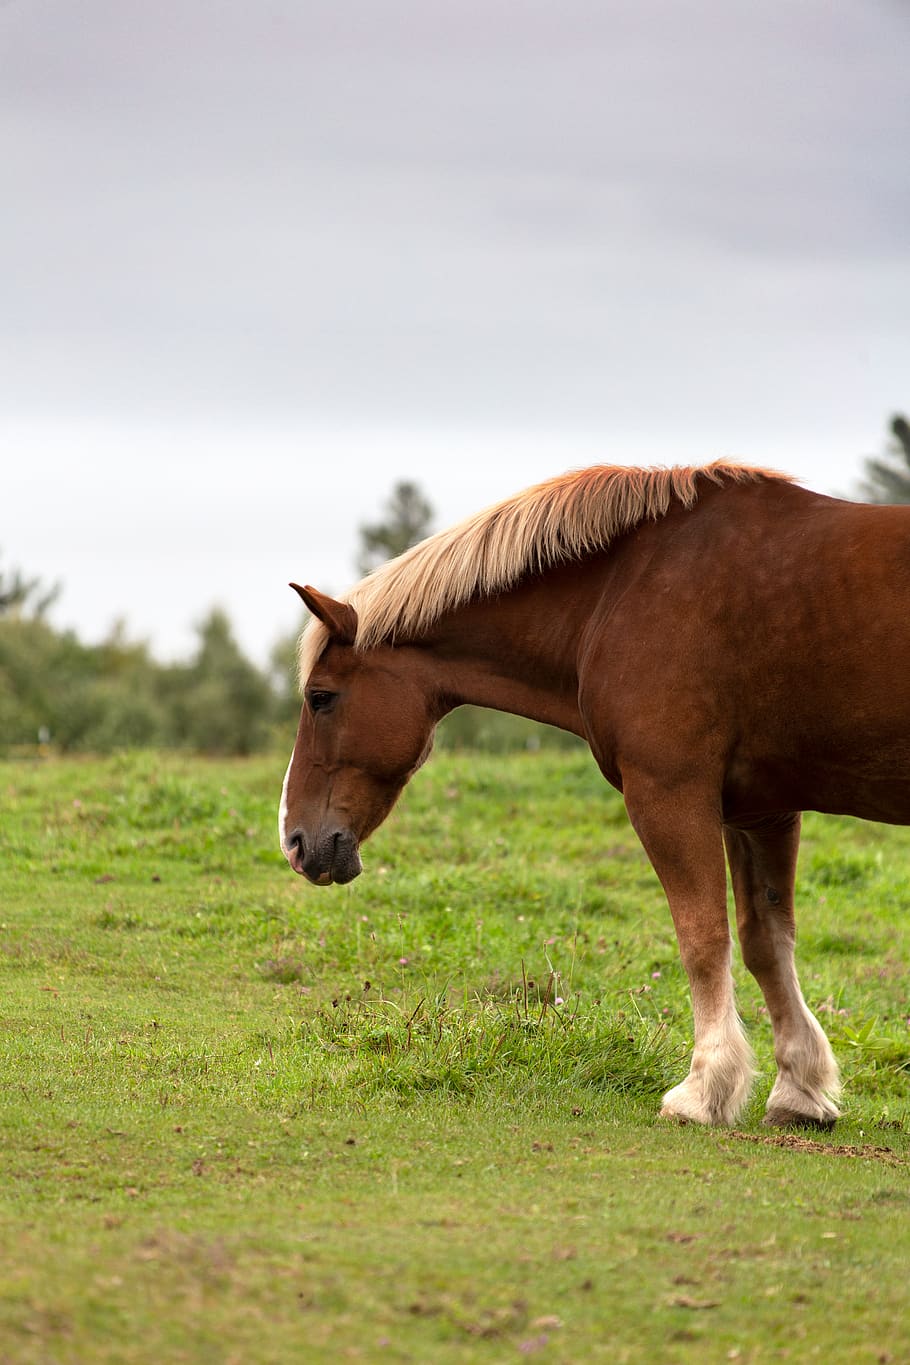 caballo, animal, campo, equino, granja, hierba, al aire libre, rural, naturaleza, país